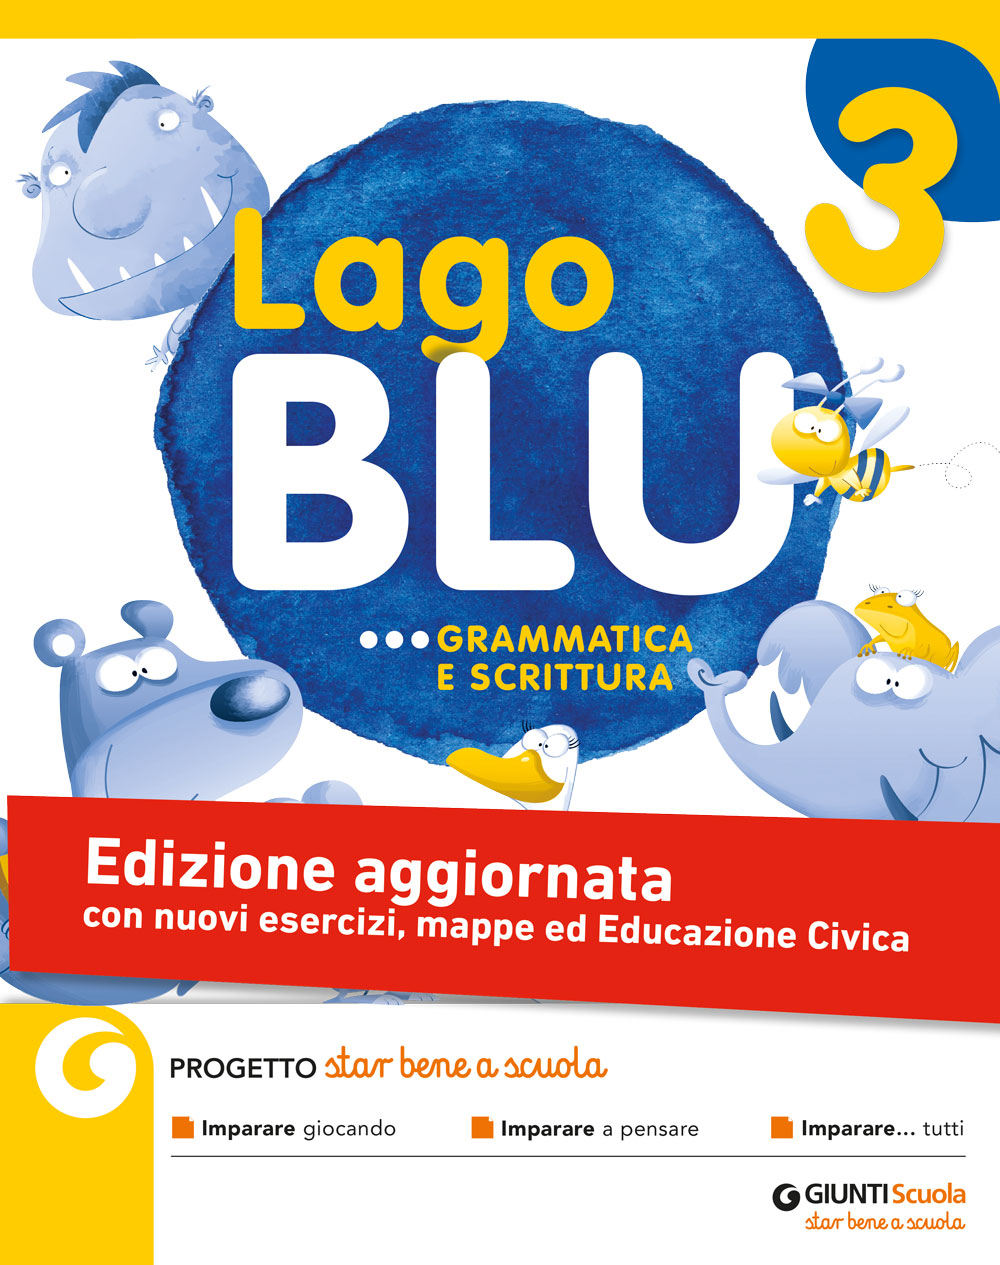 Lago Blu grammatica e scrittura 3 - edizione aggiornata | Giunti Scuola